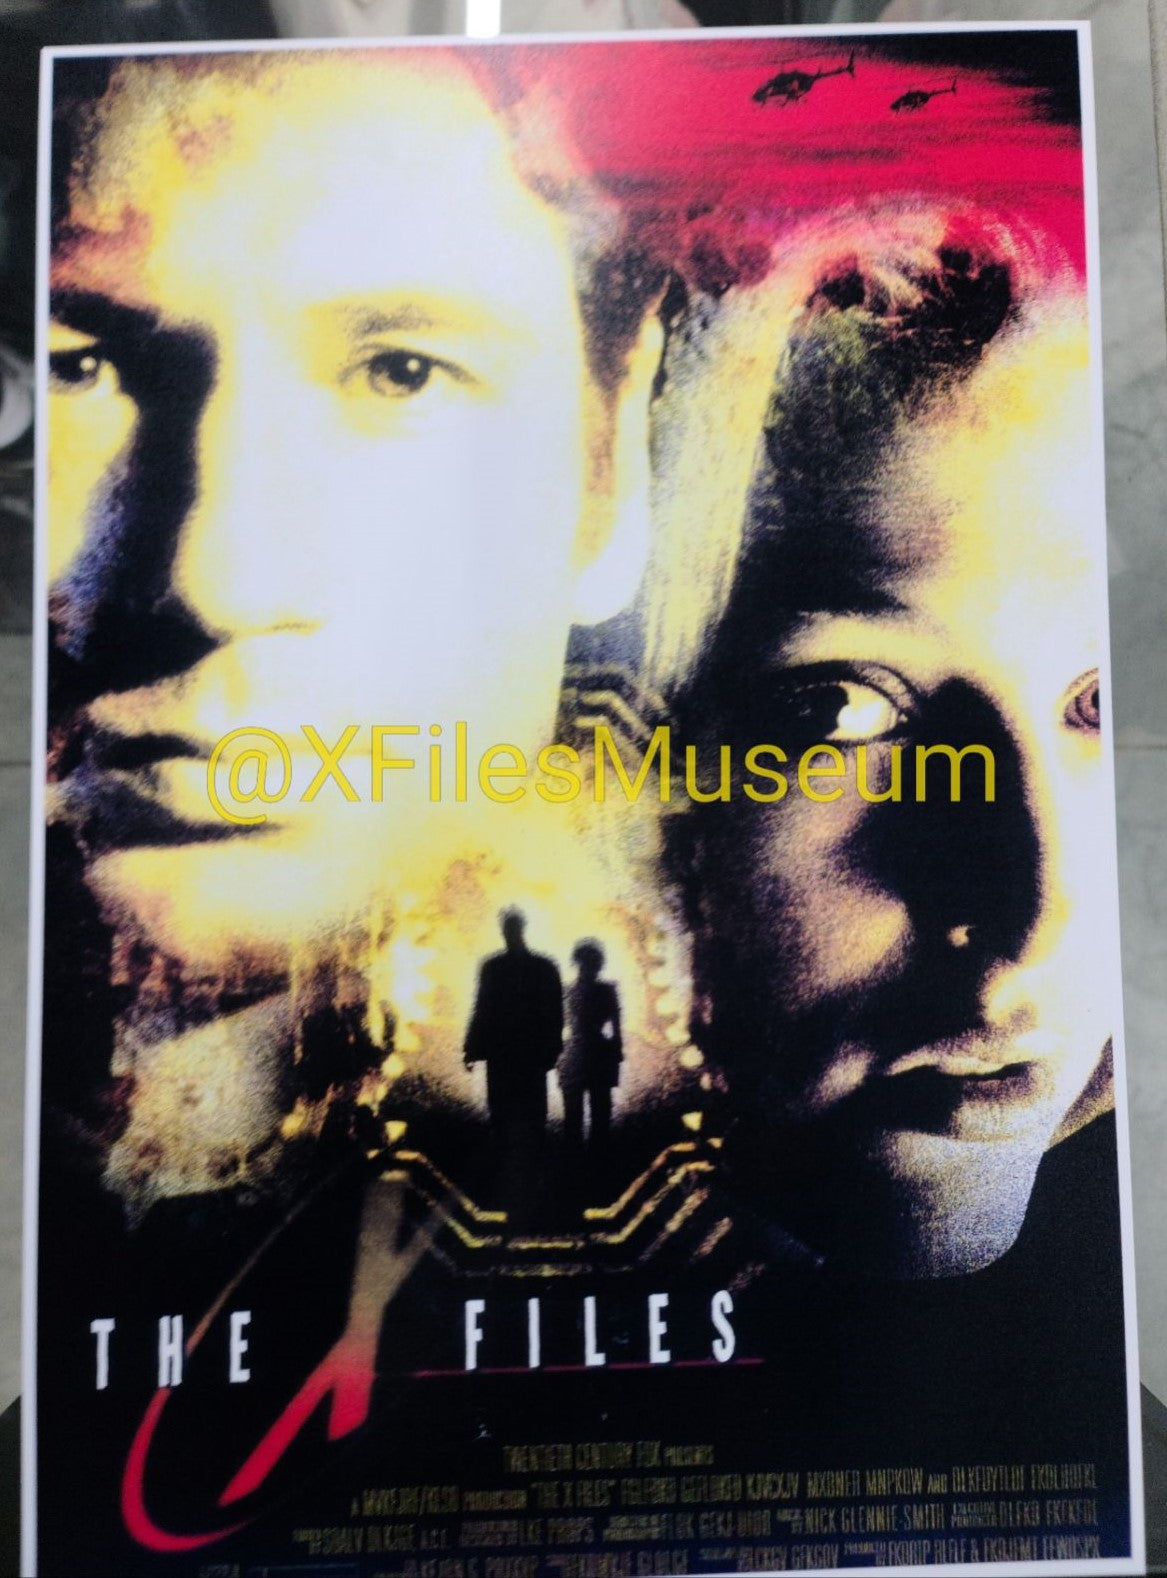 FIGHT THE FUTURE Concept Artwork - The X-Files Movie